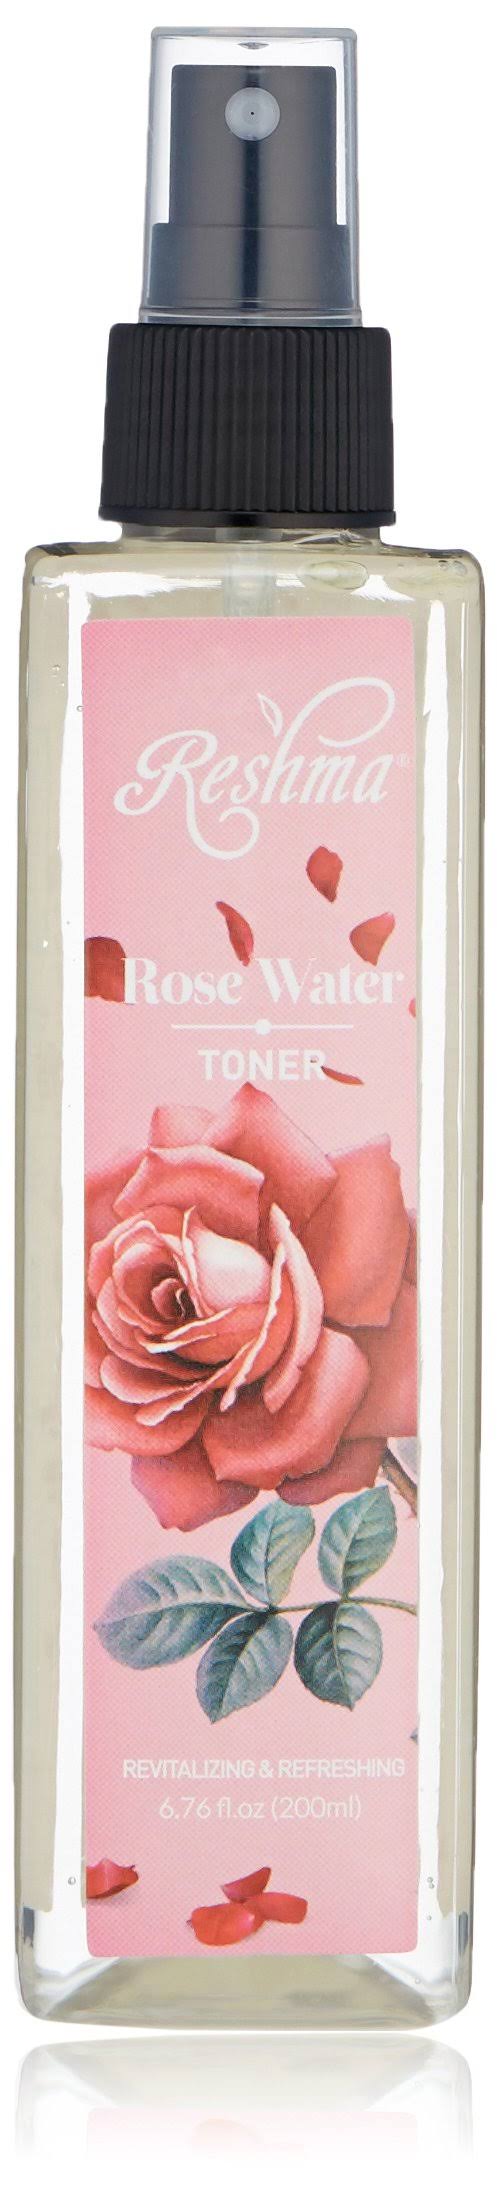 Reshma Beauty Rose Water Toner (Pack of 1)